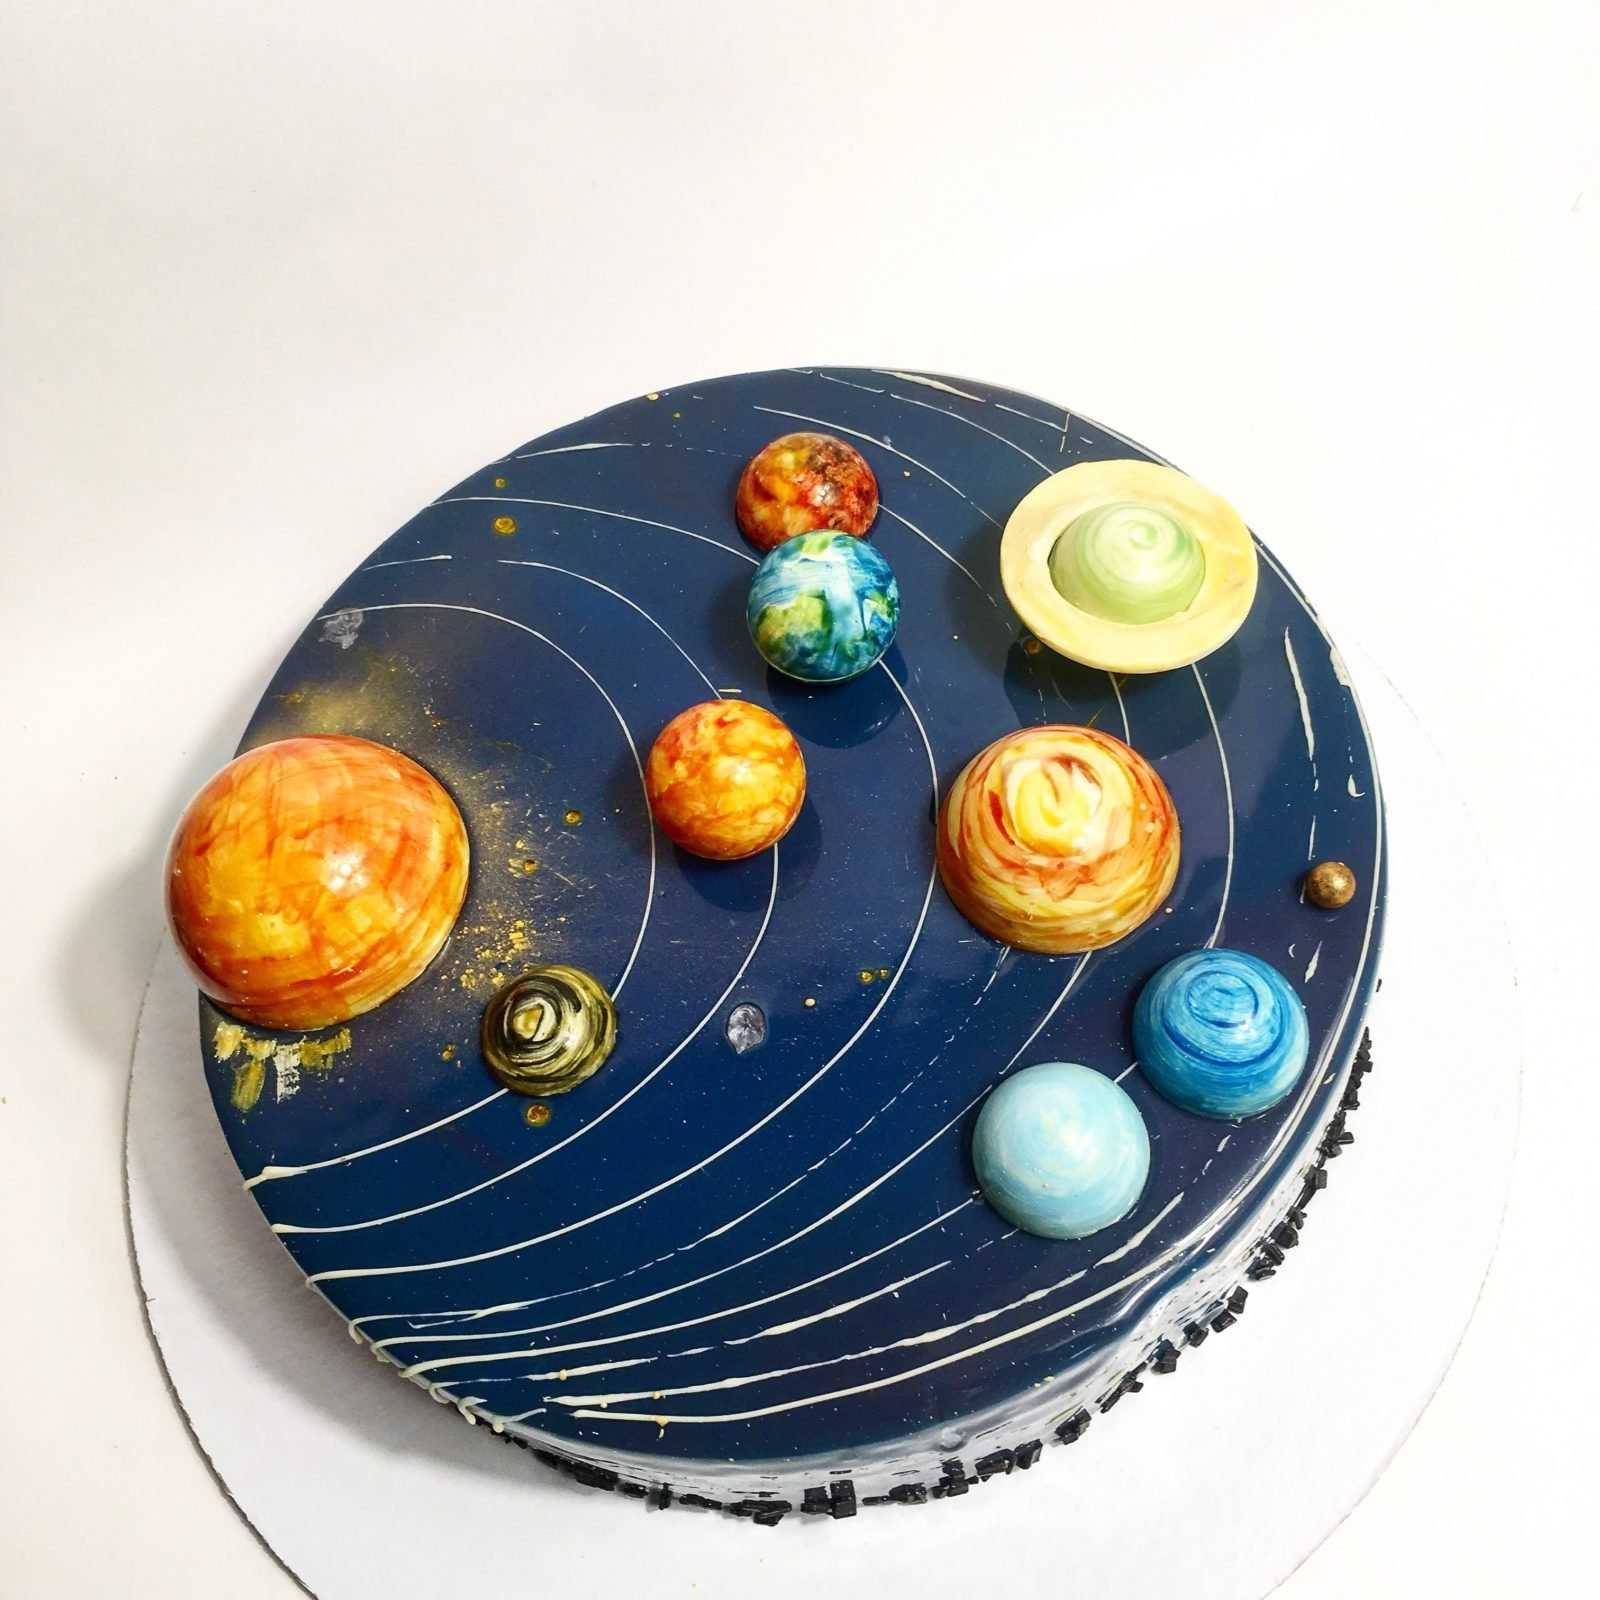 Украшать планету. Модель солнечной системы. Макет солнечной системы. Торты намкосмическкю тему. Поделка Солнечная система.